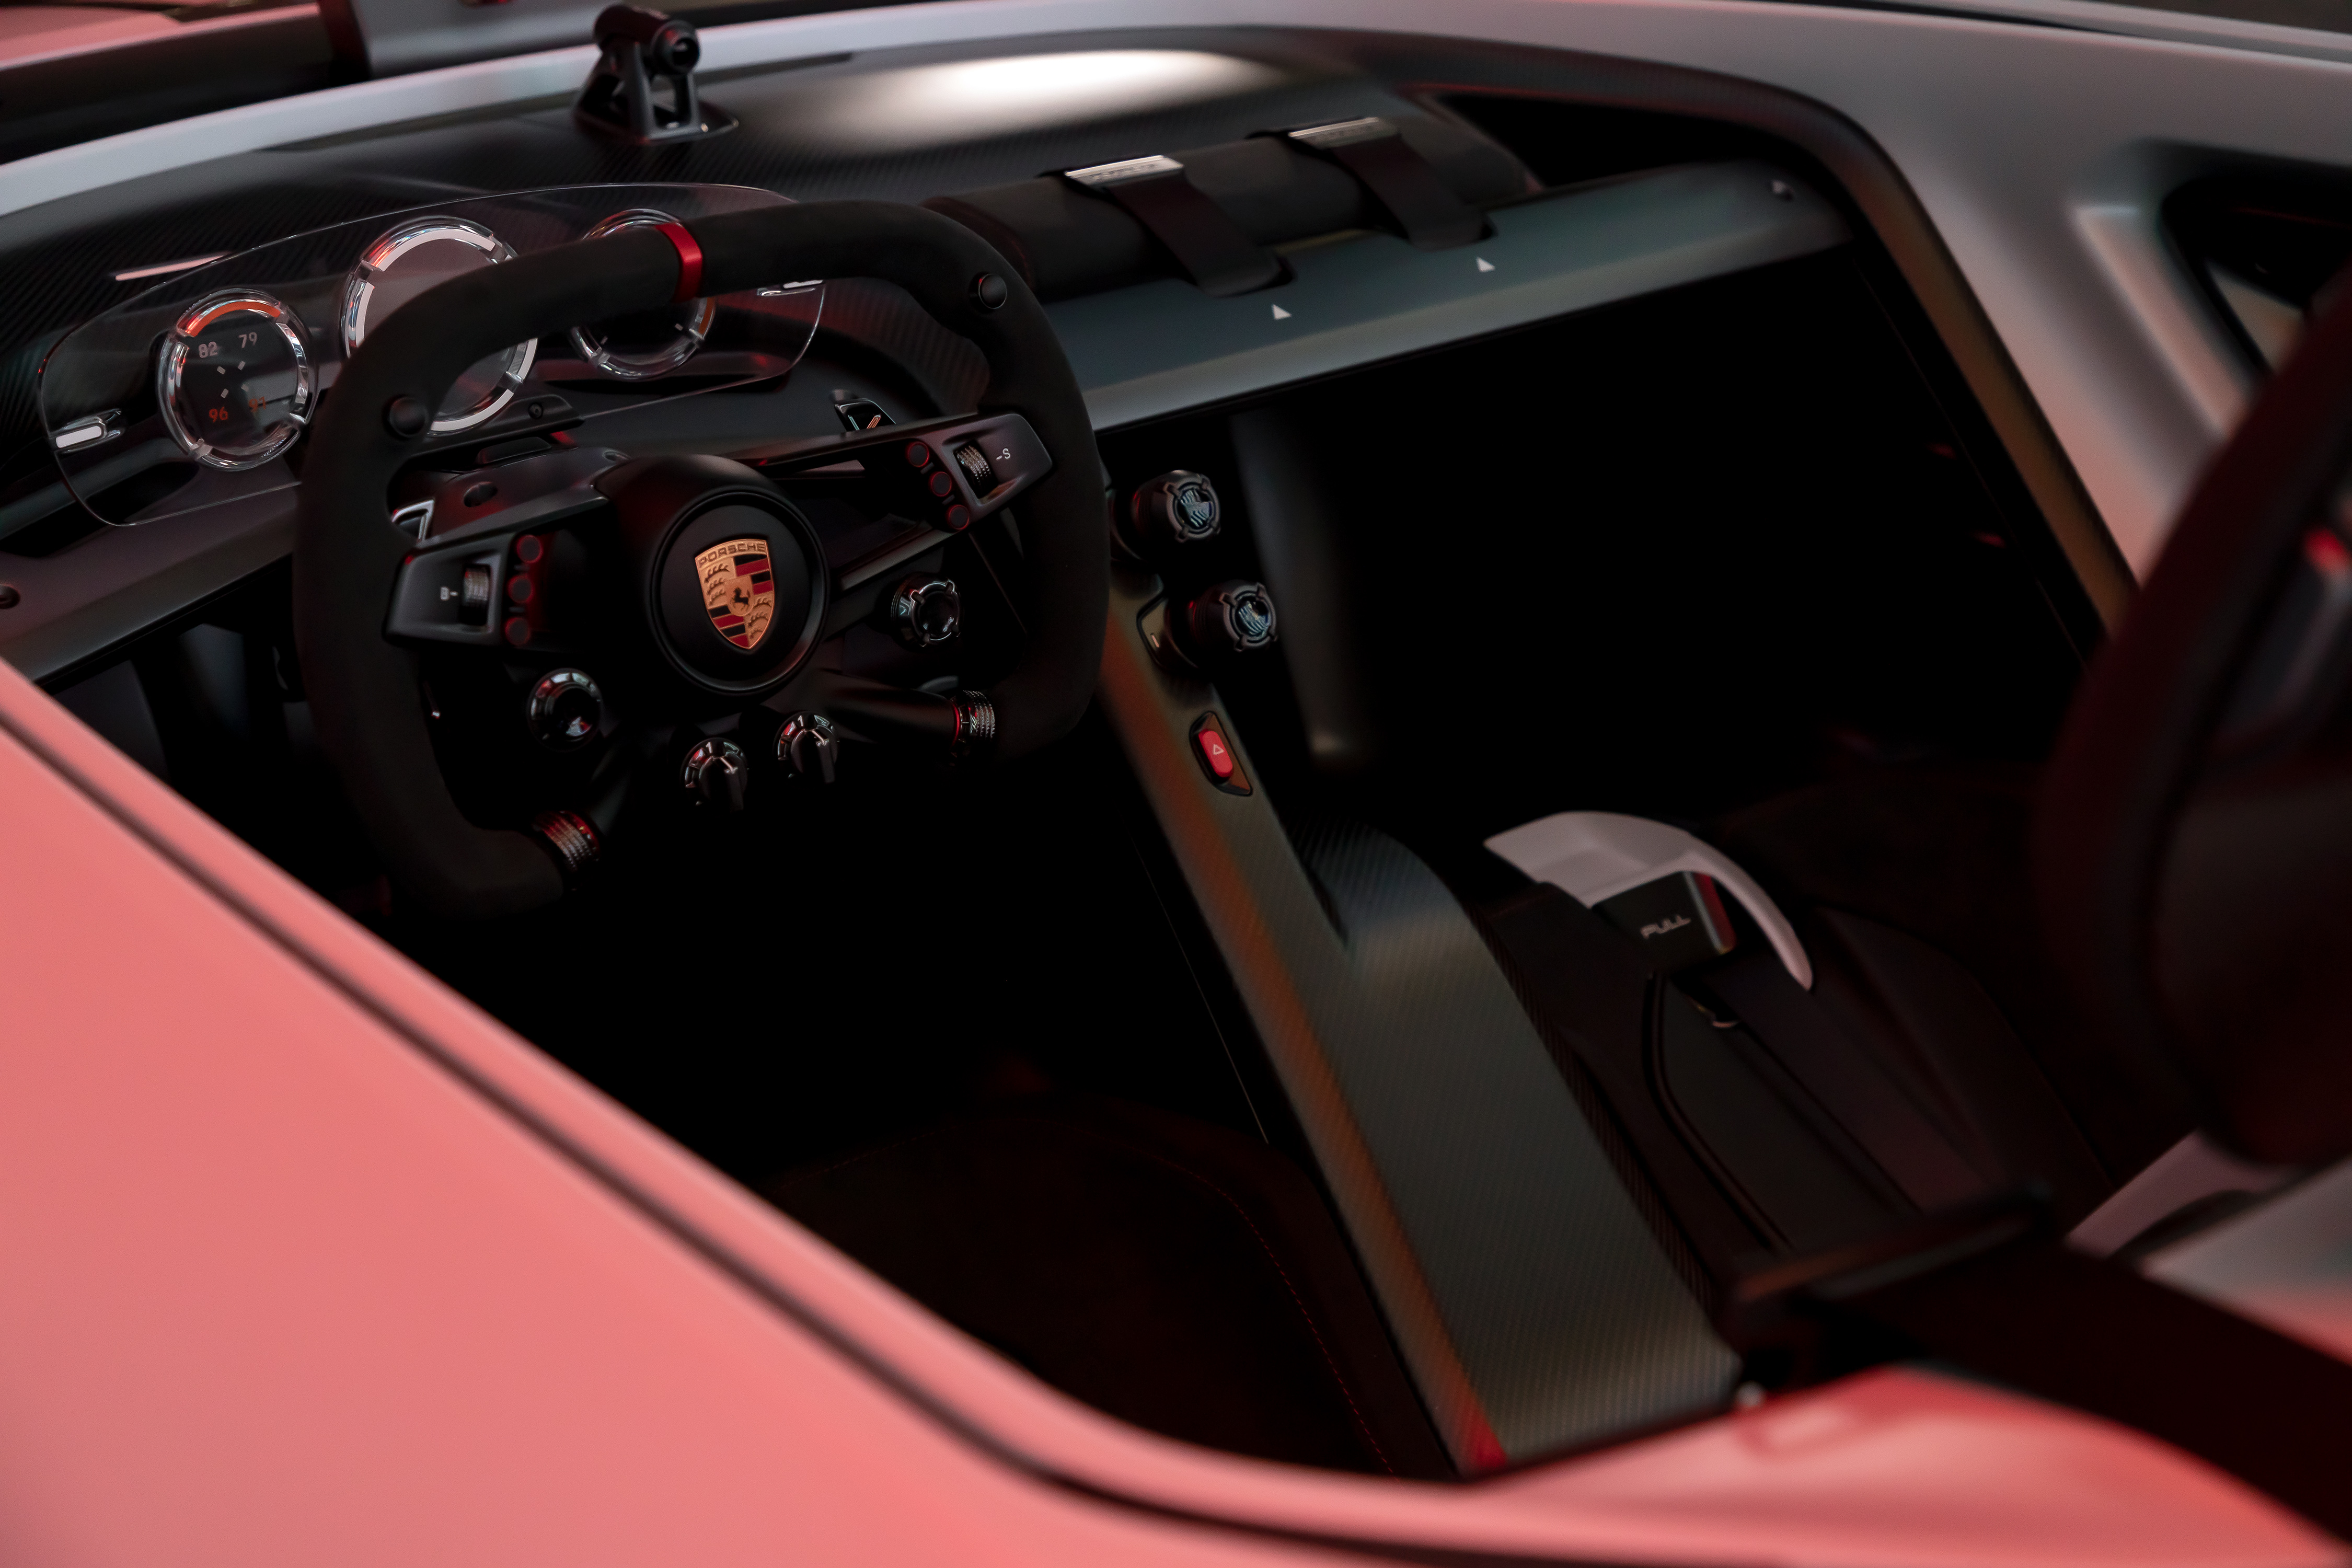 The interior of the Porsche Vision Gran Turismo